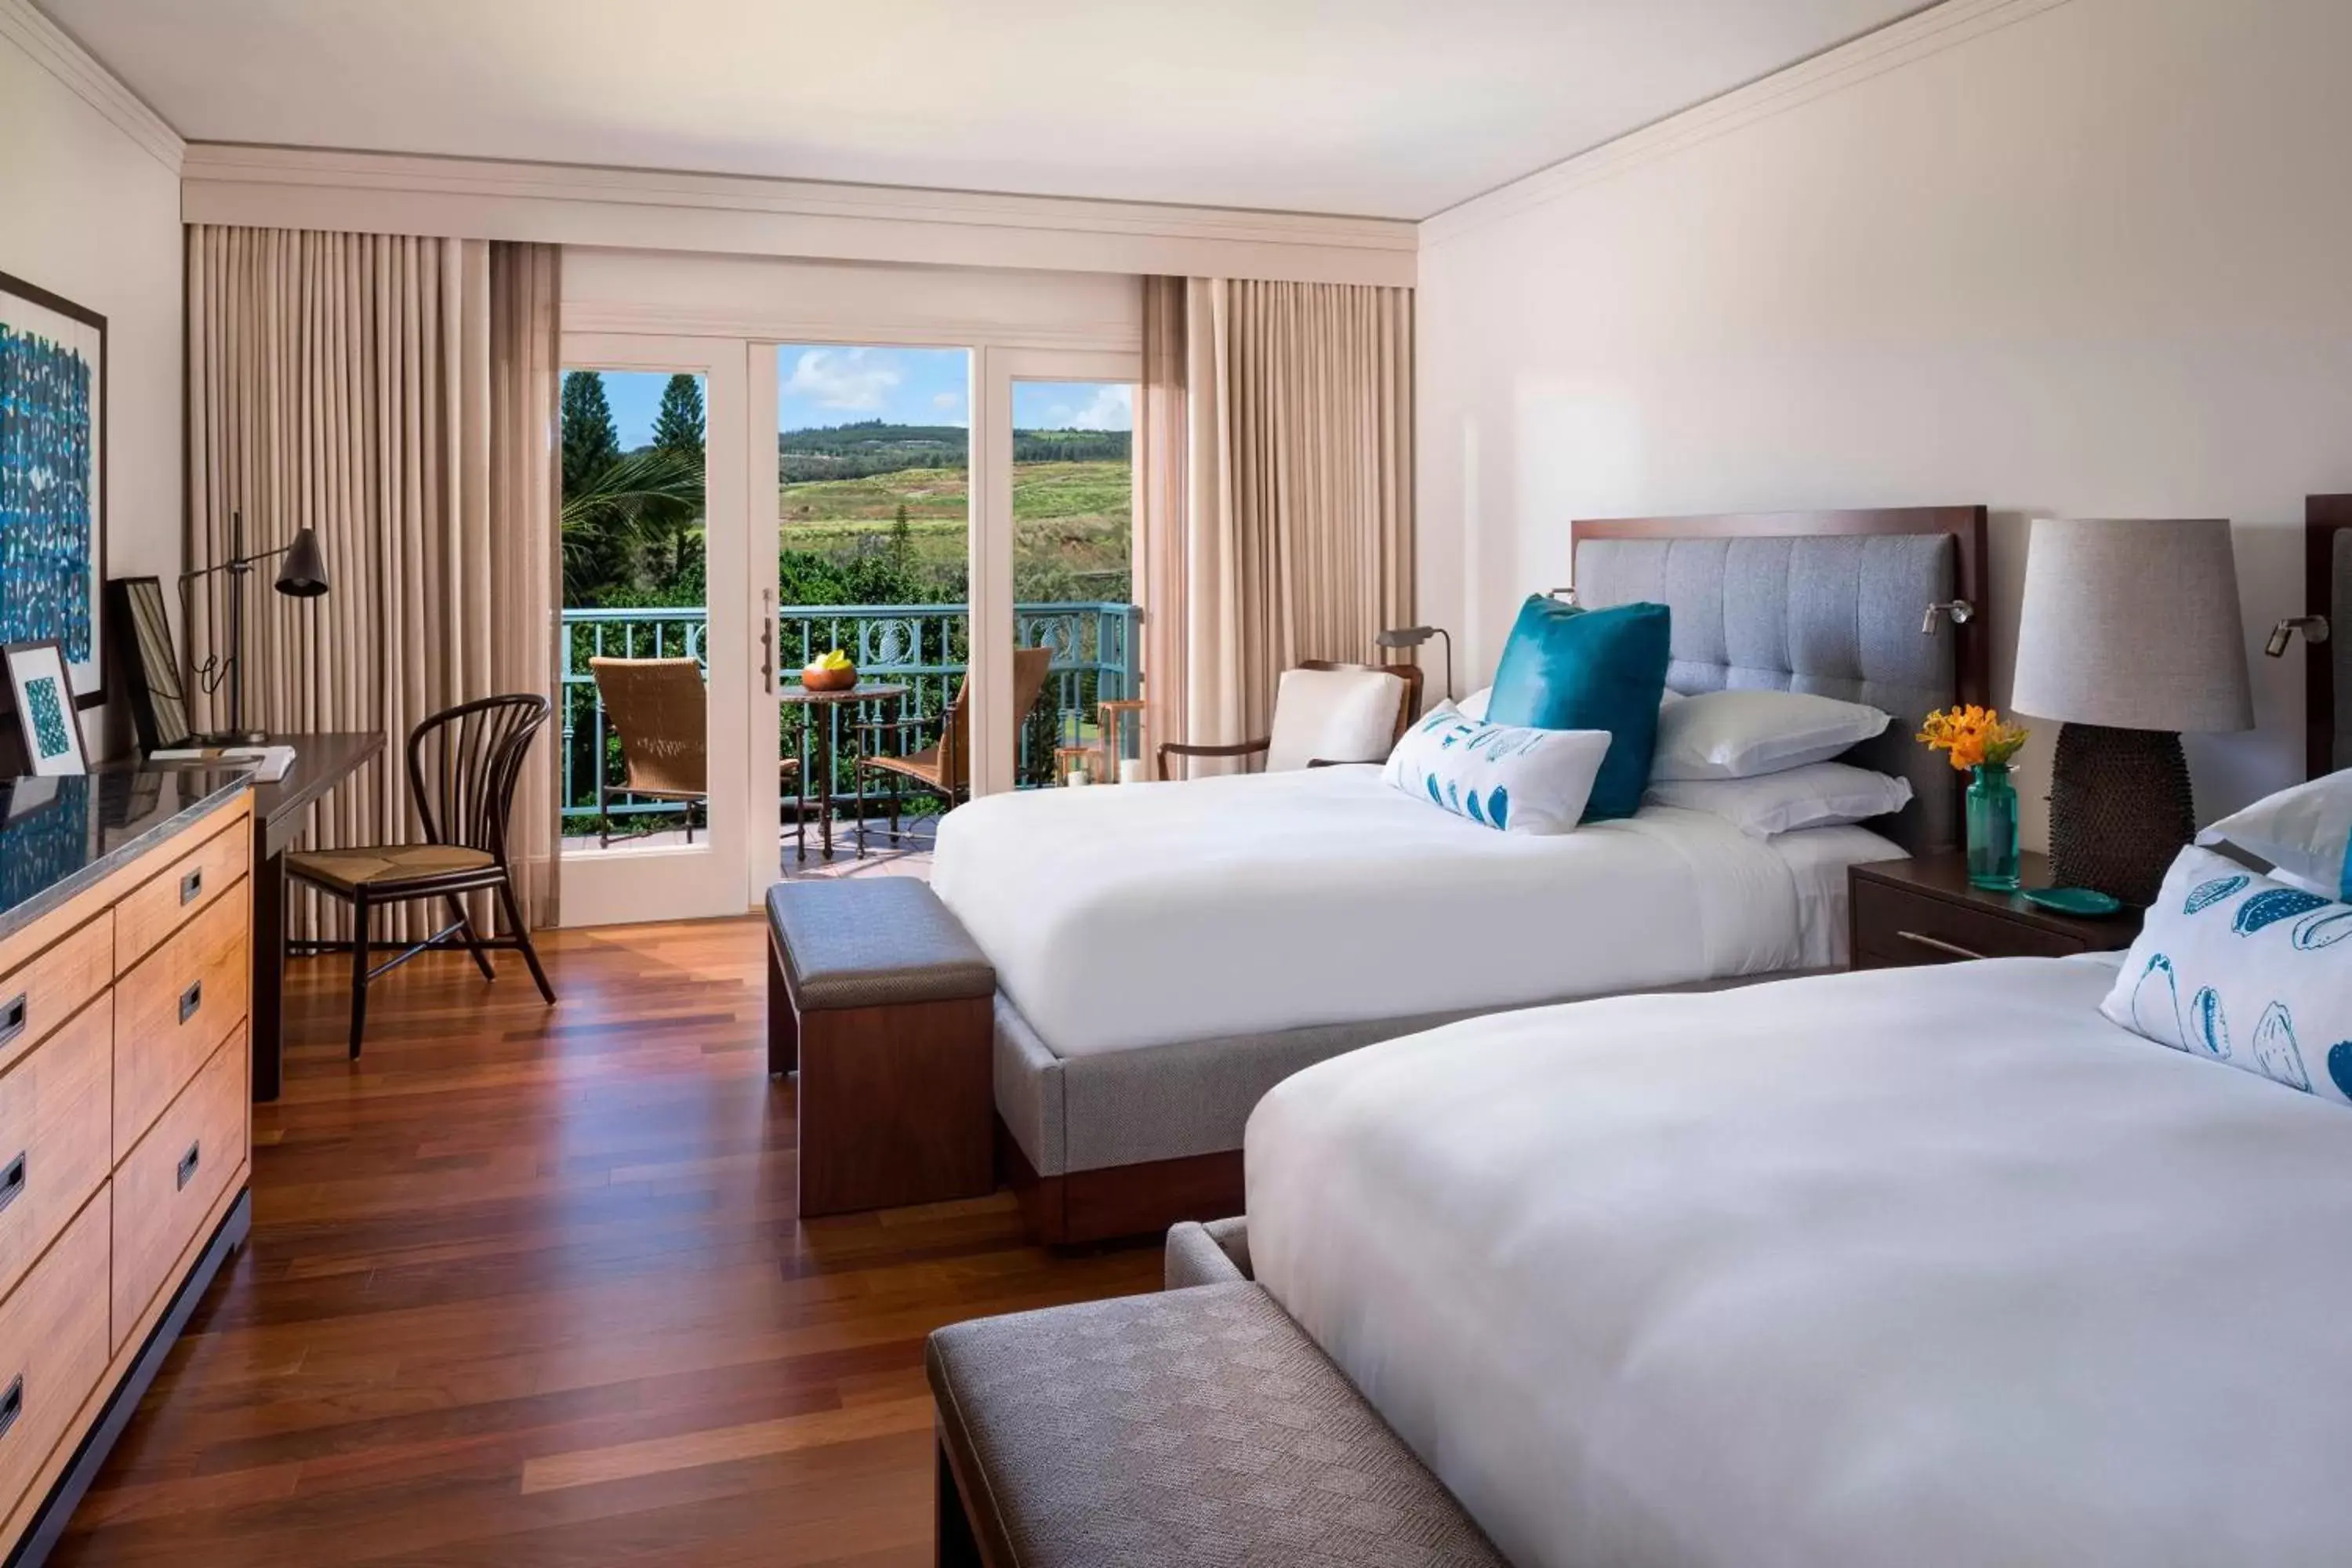 Photo of the whole room in The Ritz-Carlton Maui, Kapalua